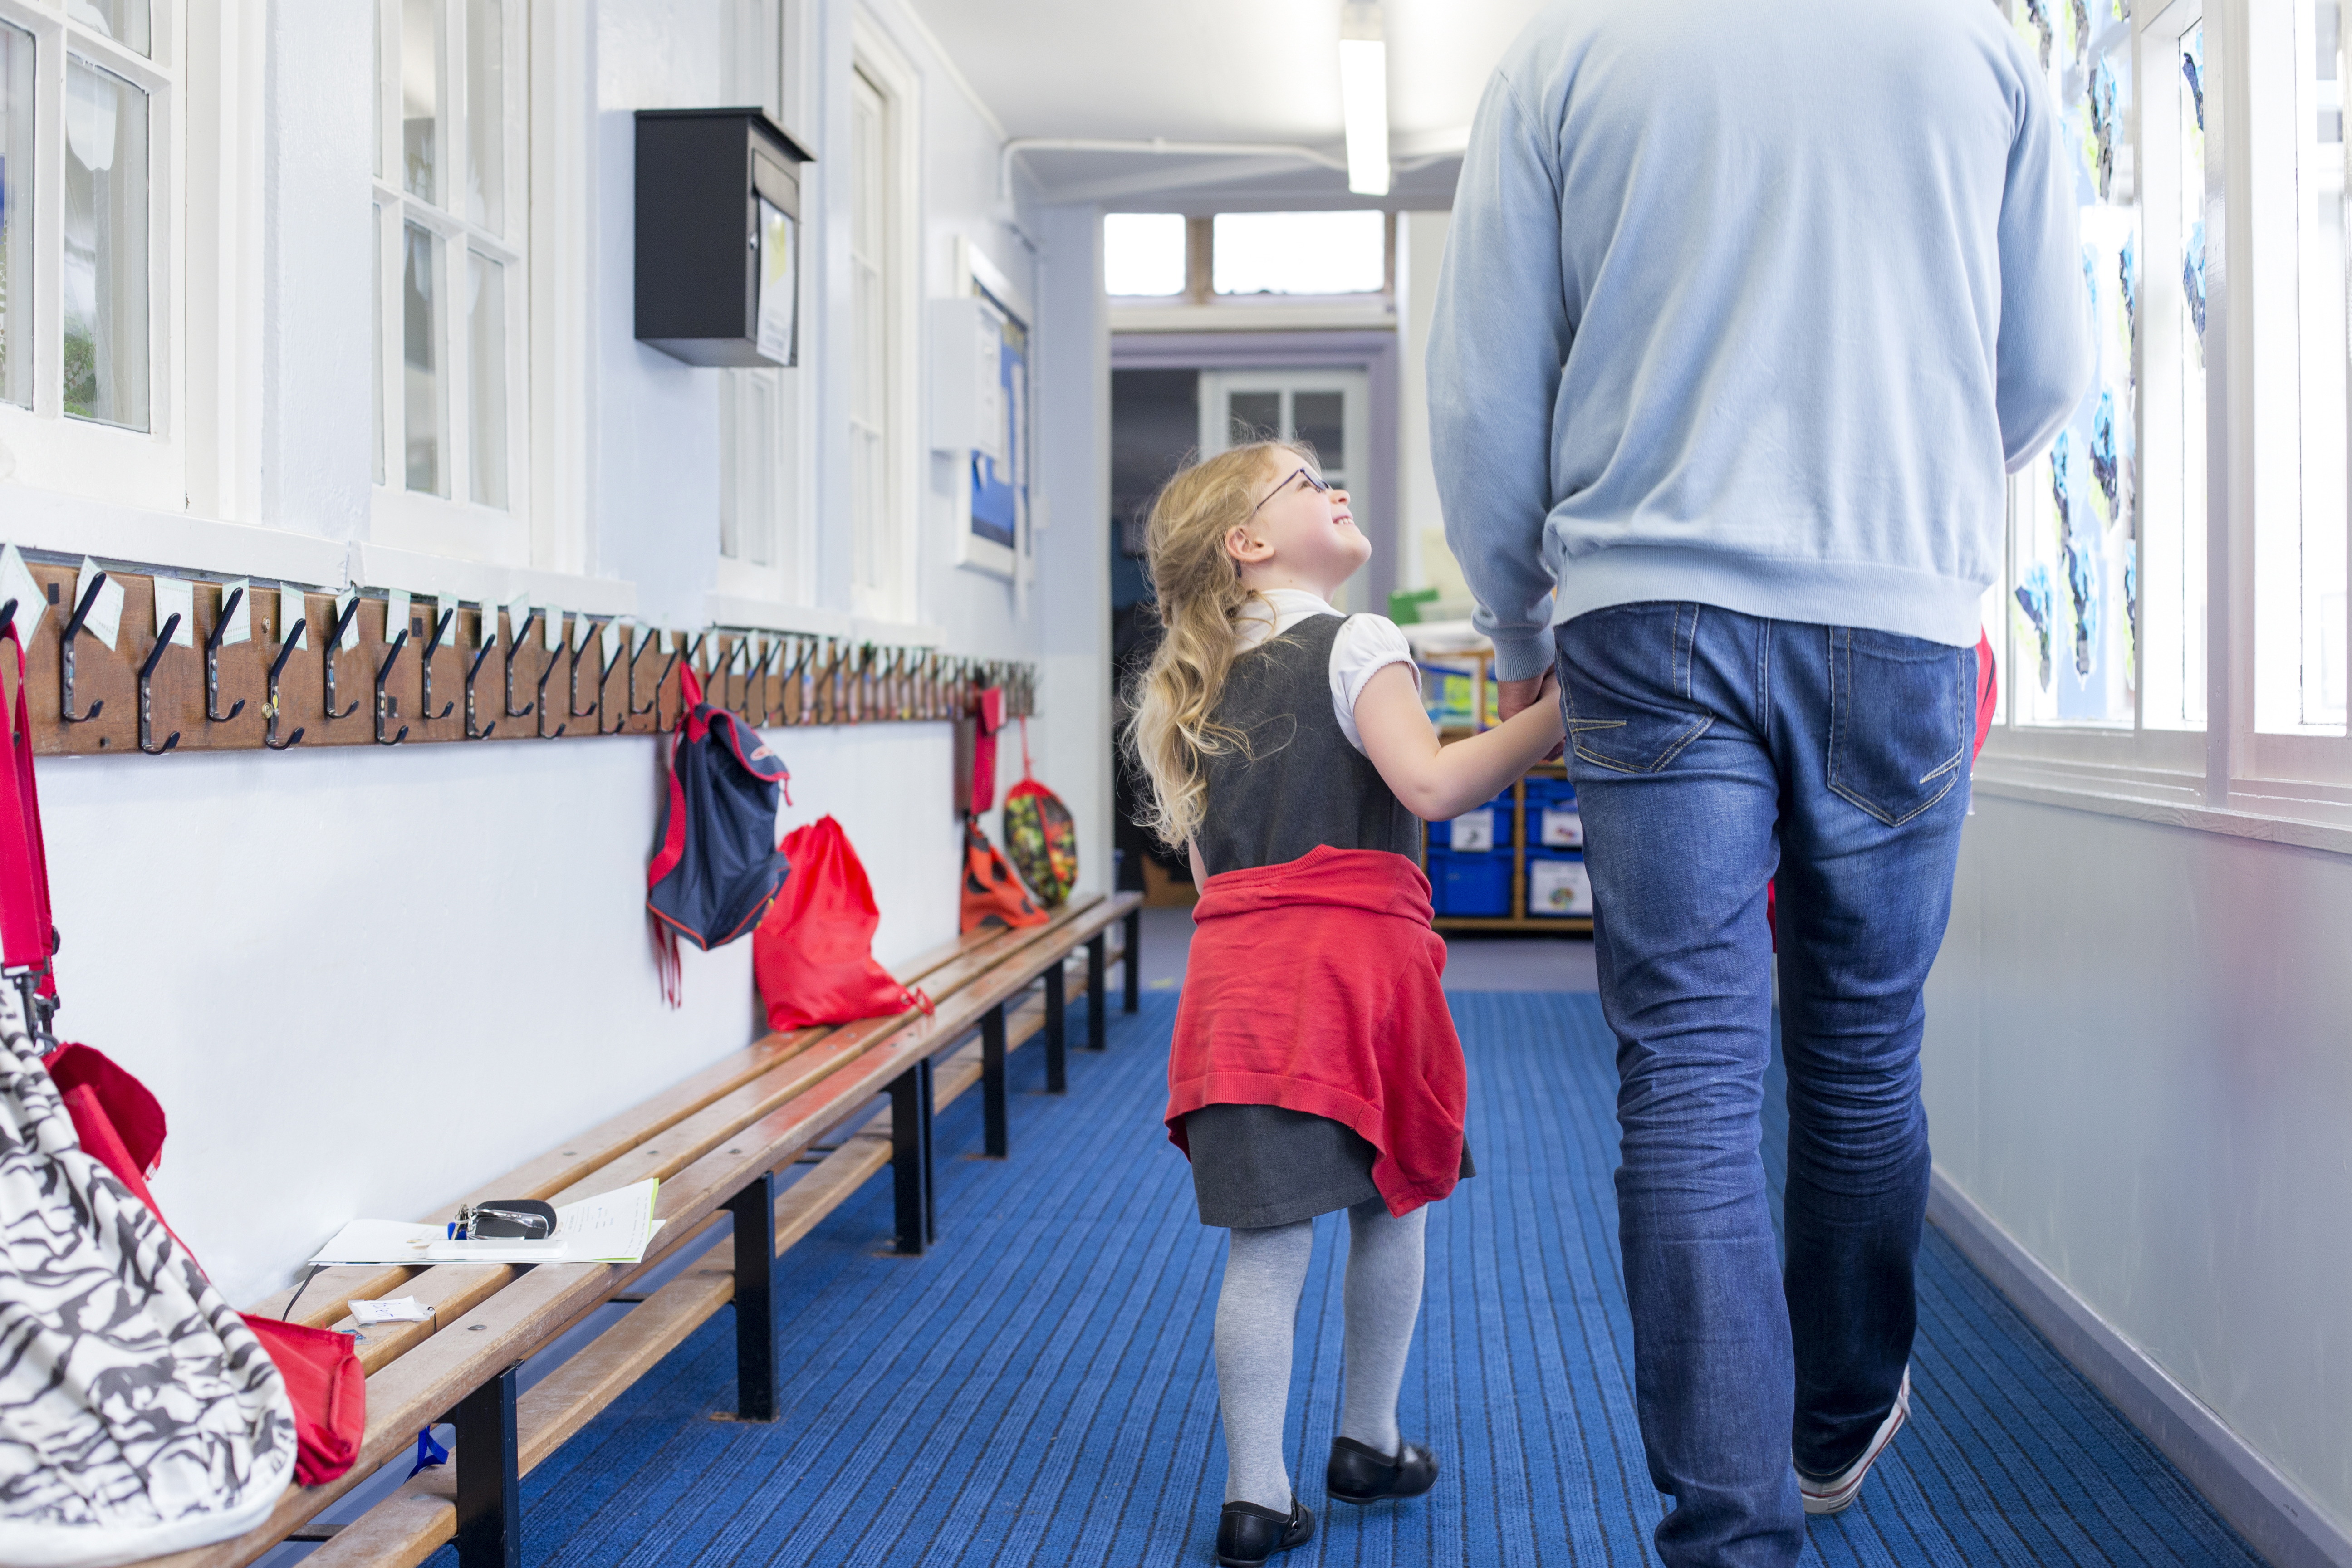 Petite fille souriant et tenant la main d'un homme alors qu'ils marchent dans un couloir | Source : Shutterstock